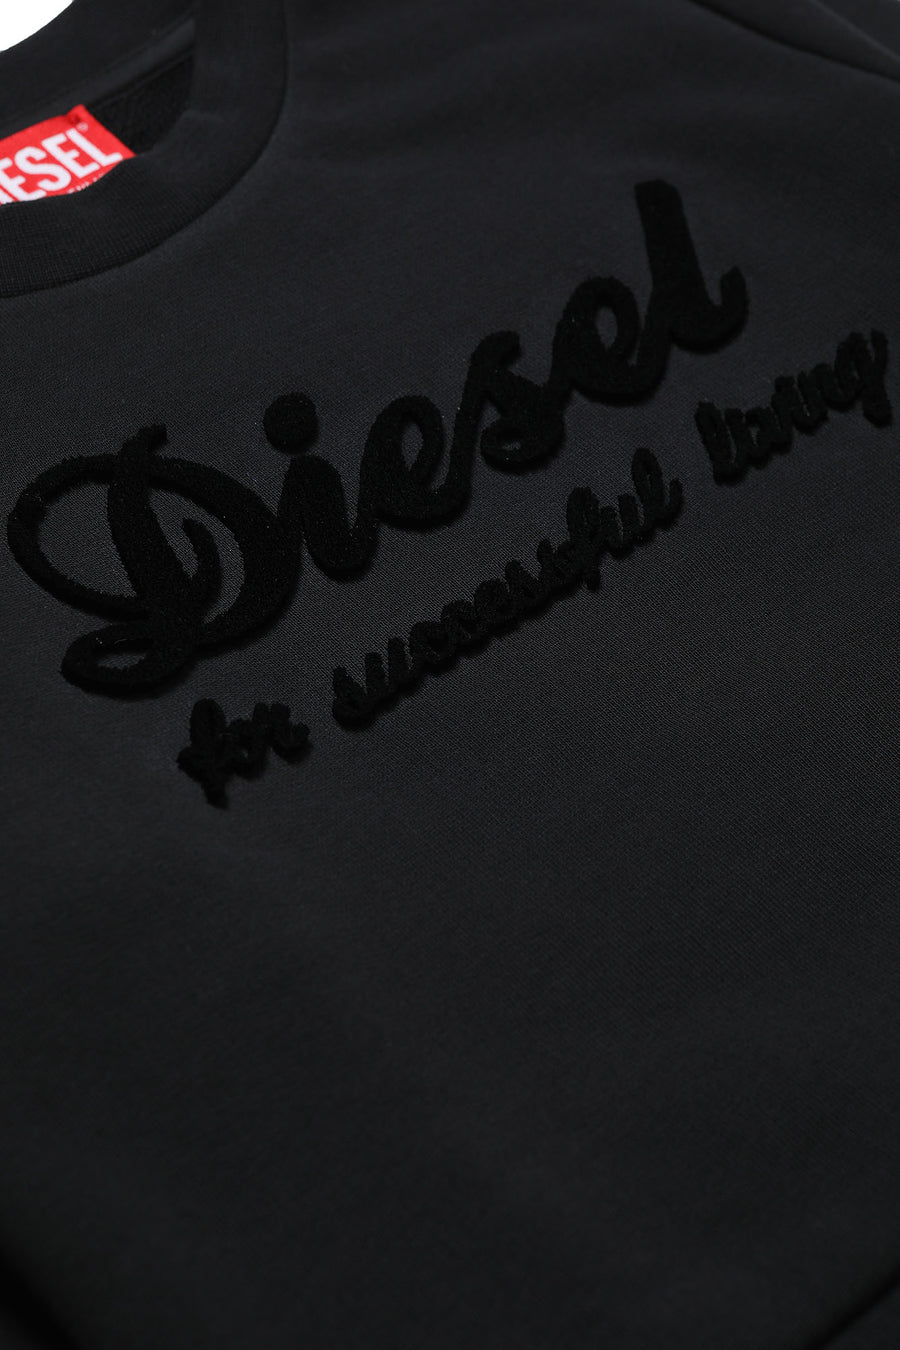 Black logo sweatshirt by Diesel